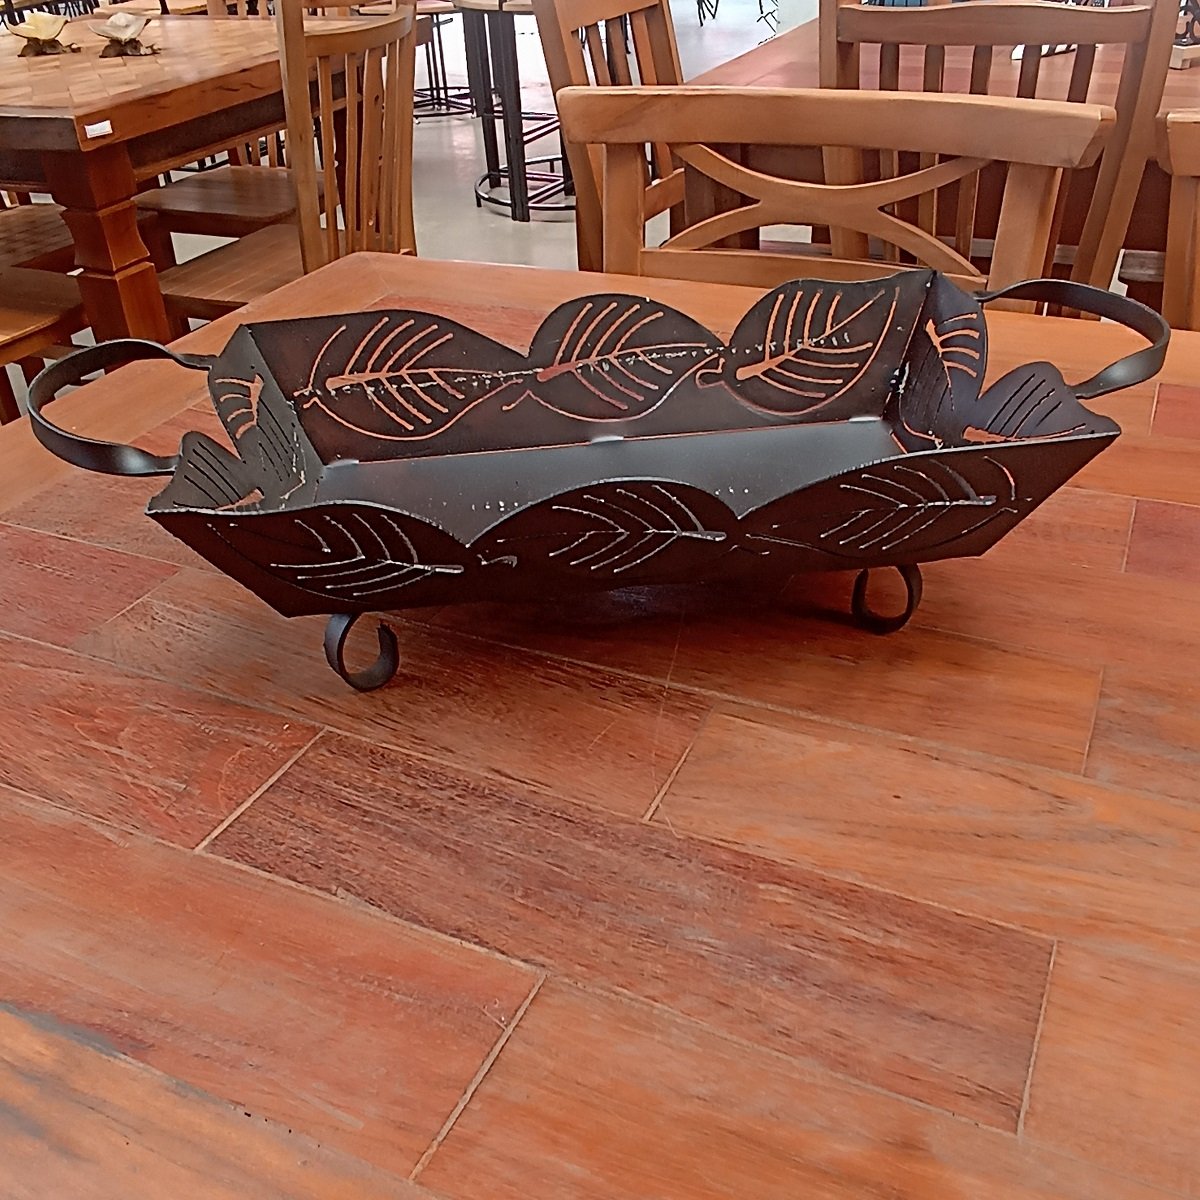 Bandeja de ferro para mesas e bancadas super resistente artesanato rústico para decoração e utilidad - 4